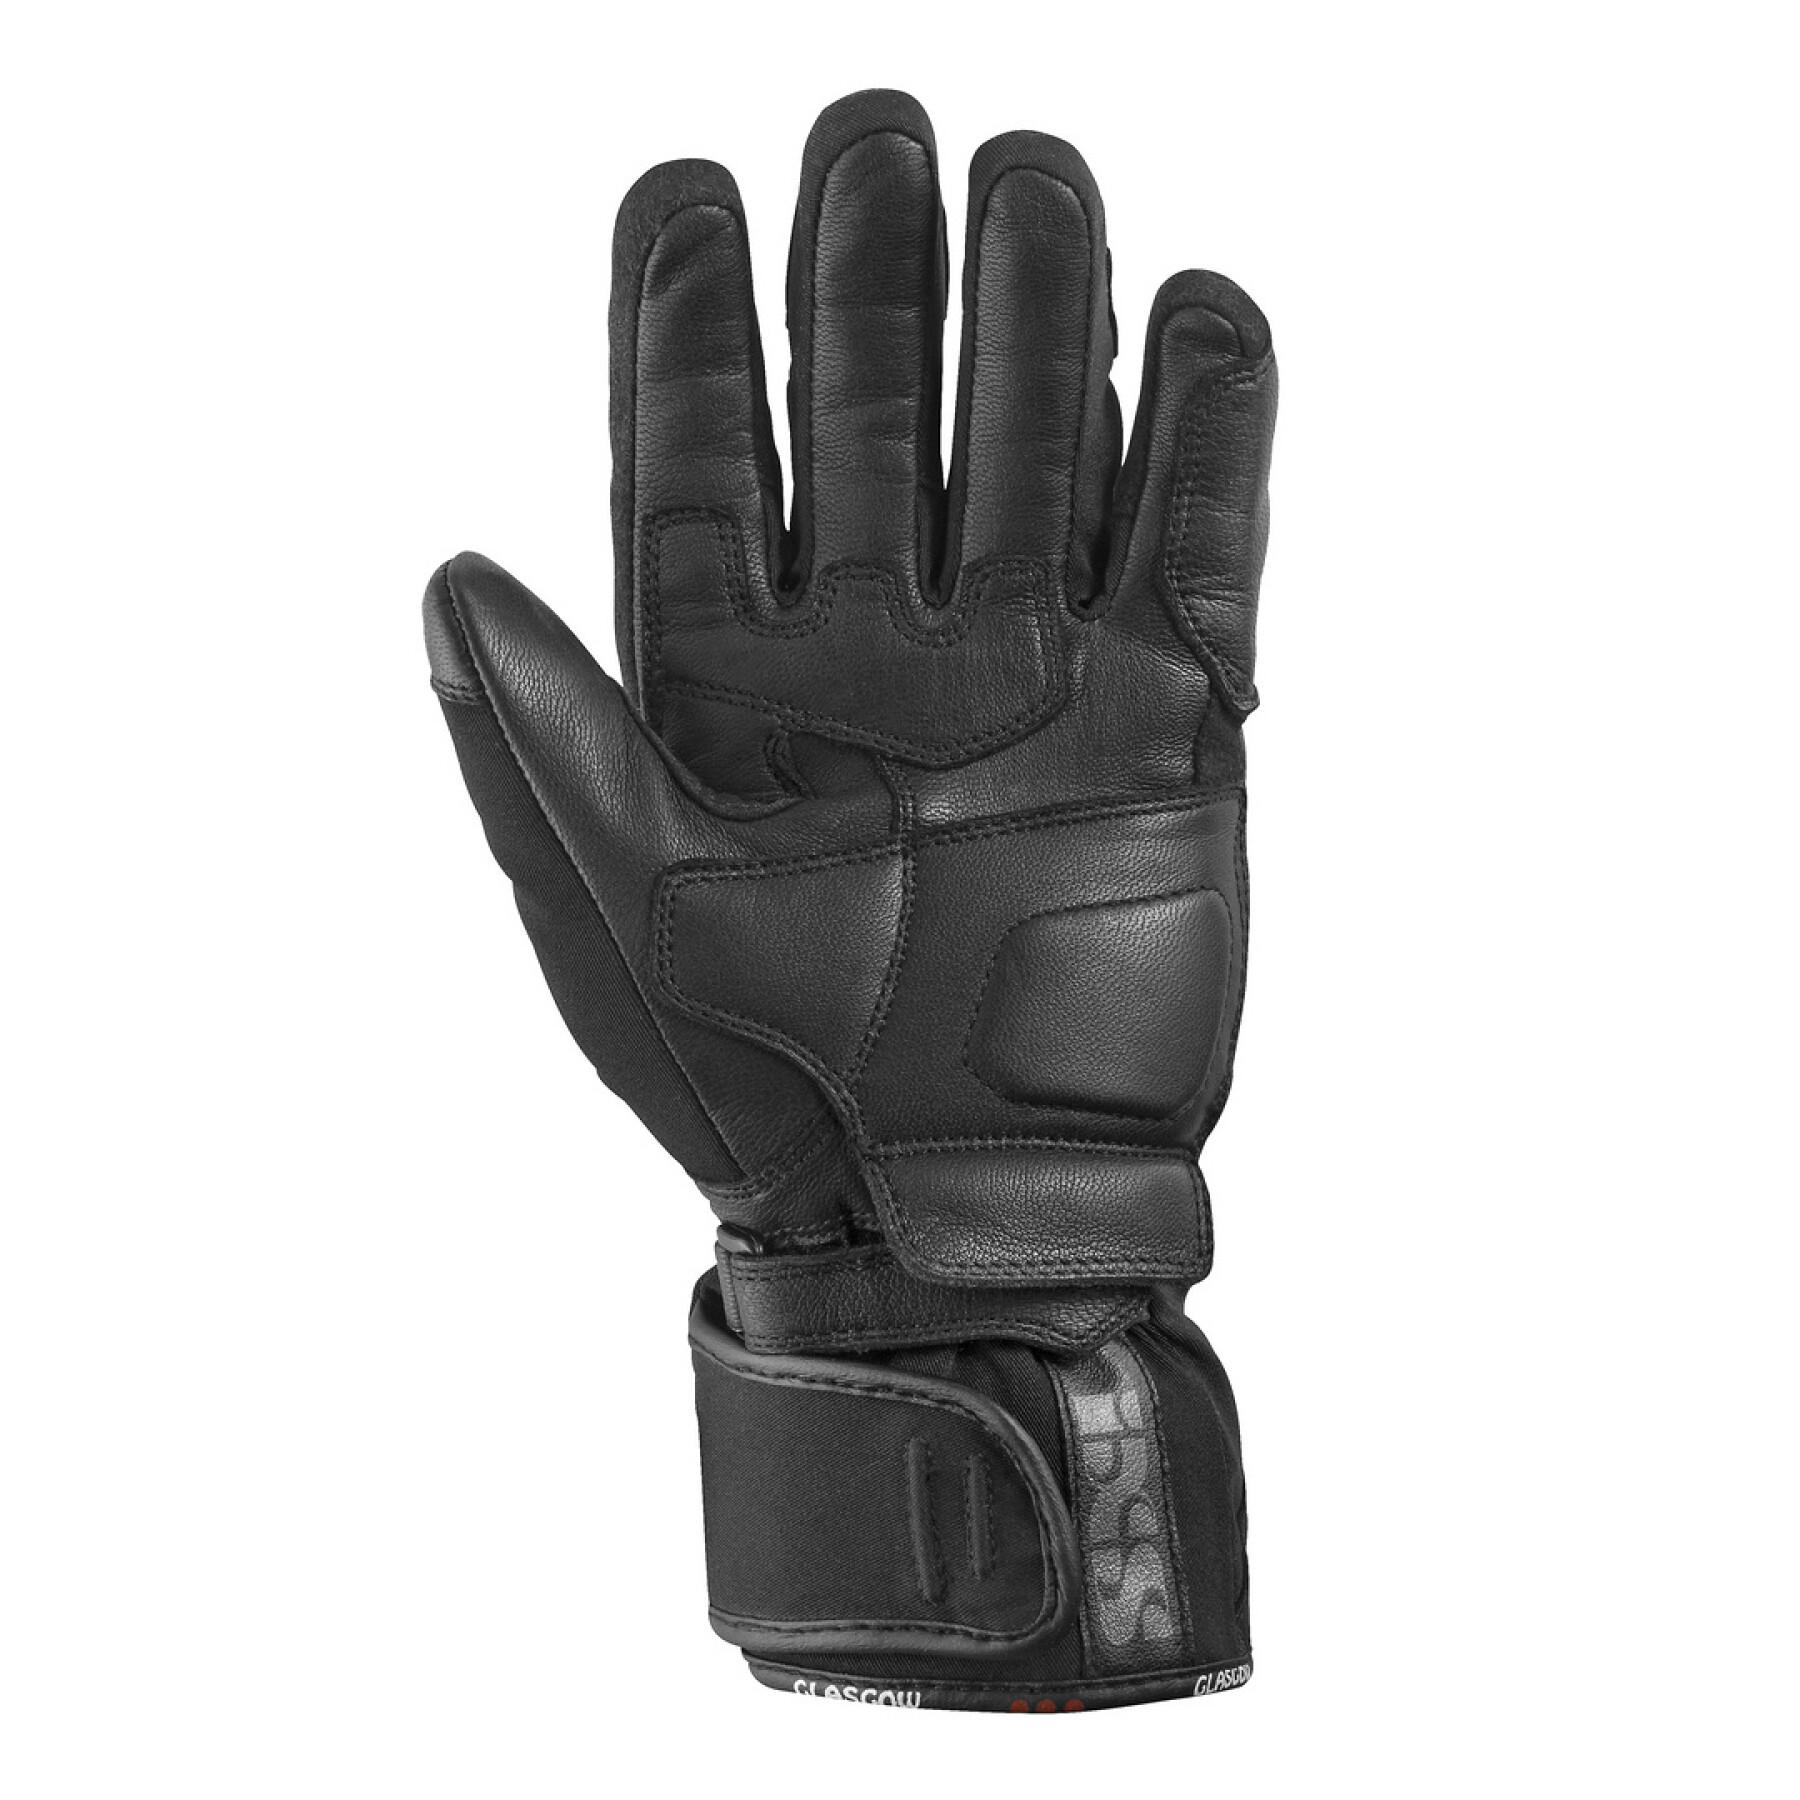 All season motorcycle gloves tour IXS glasgow-st